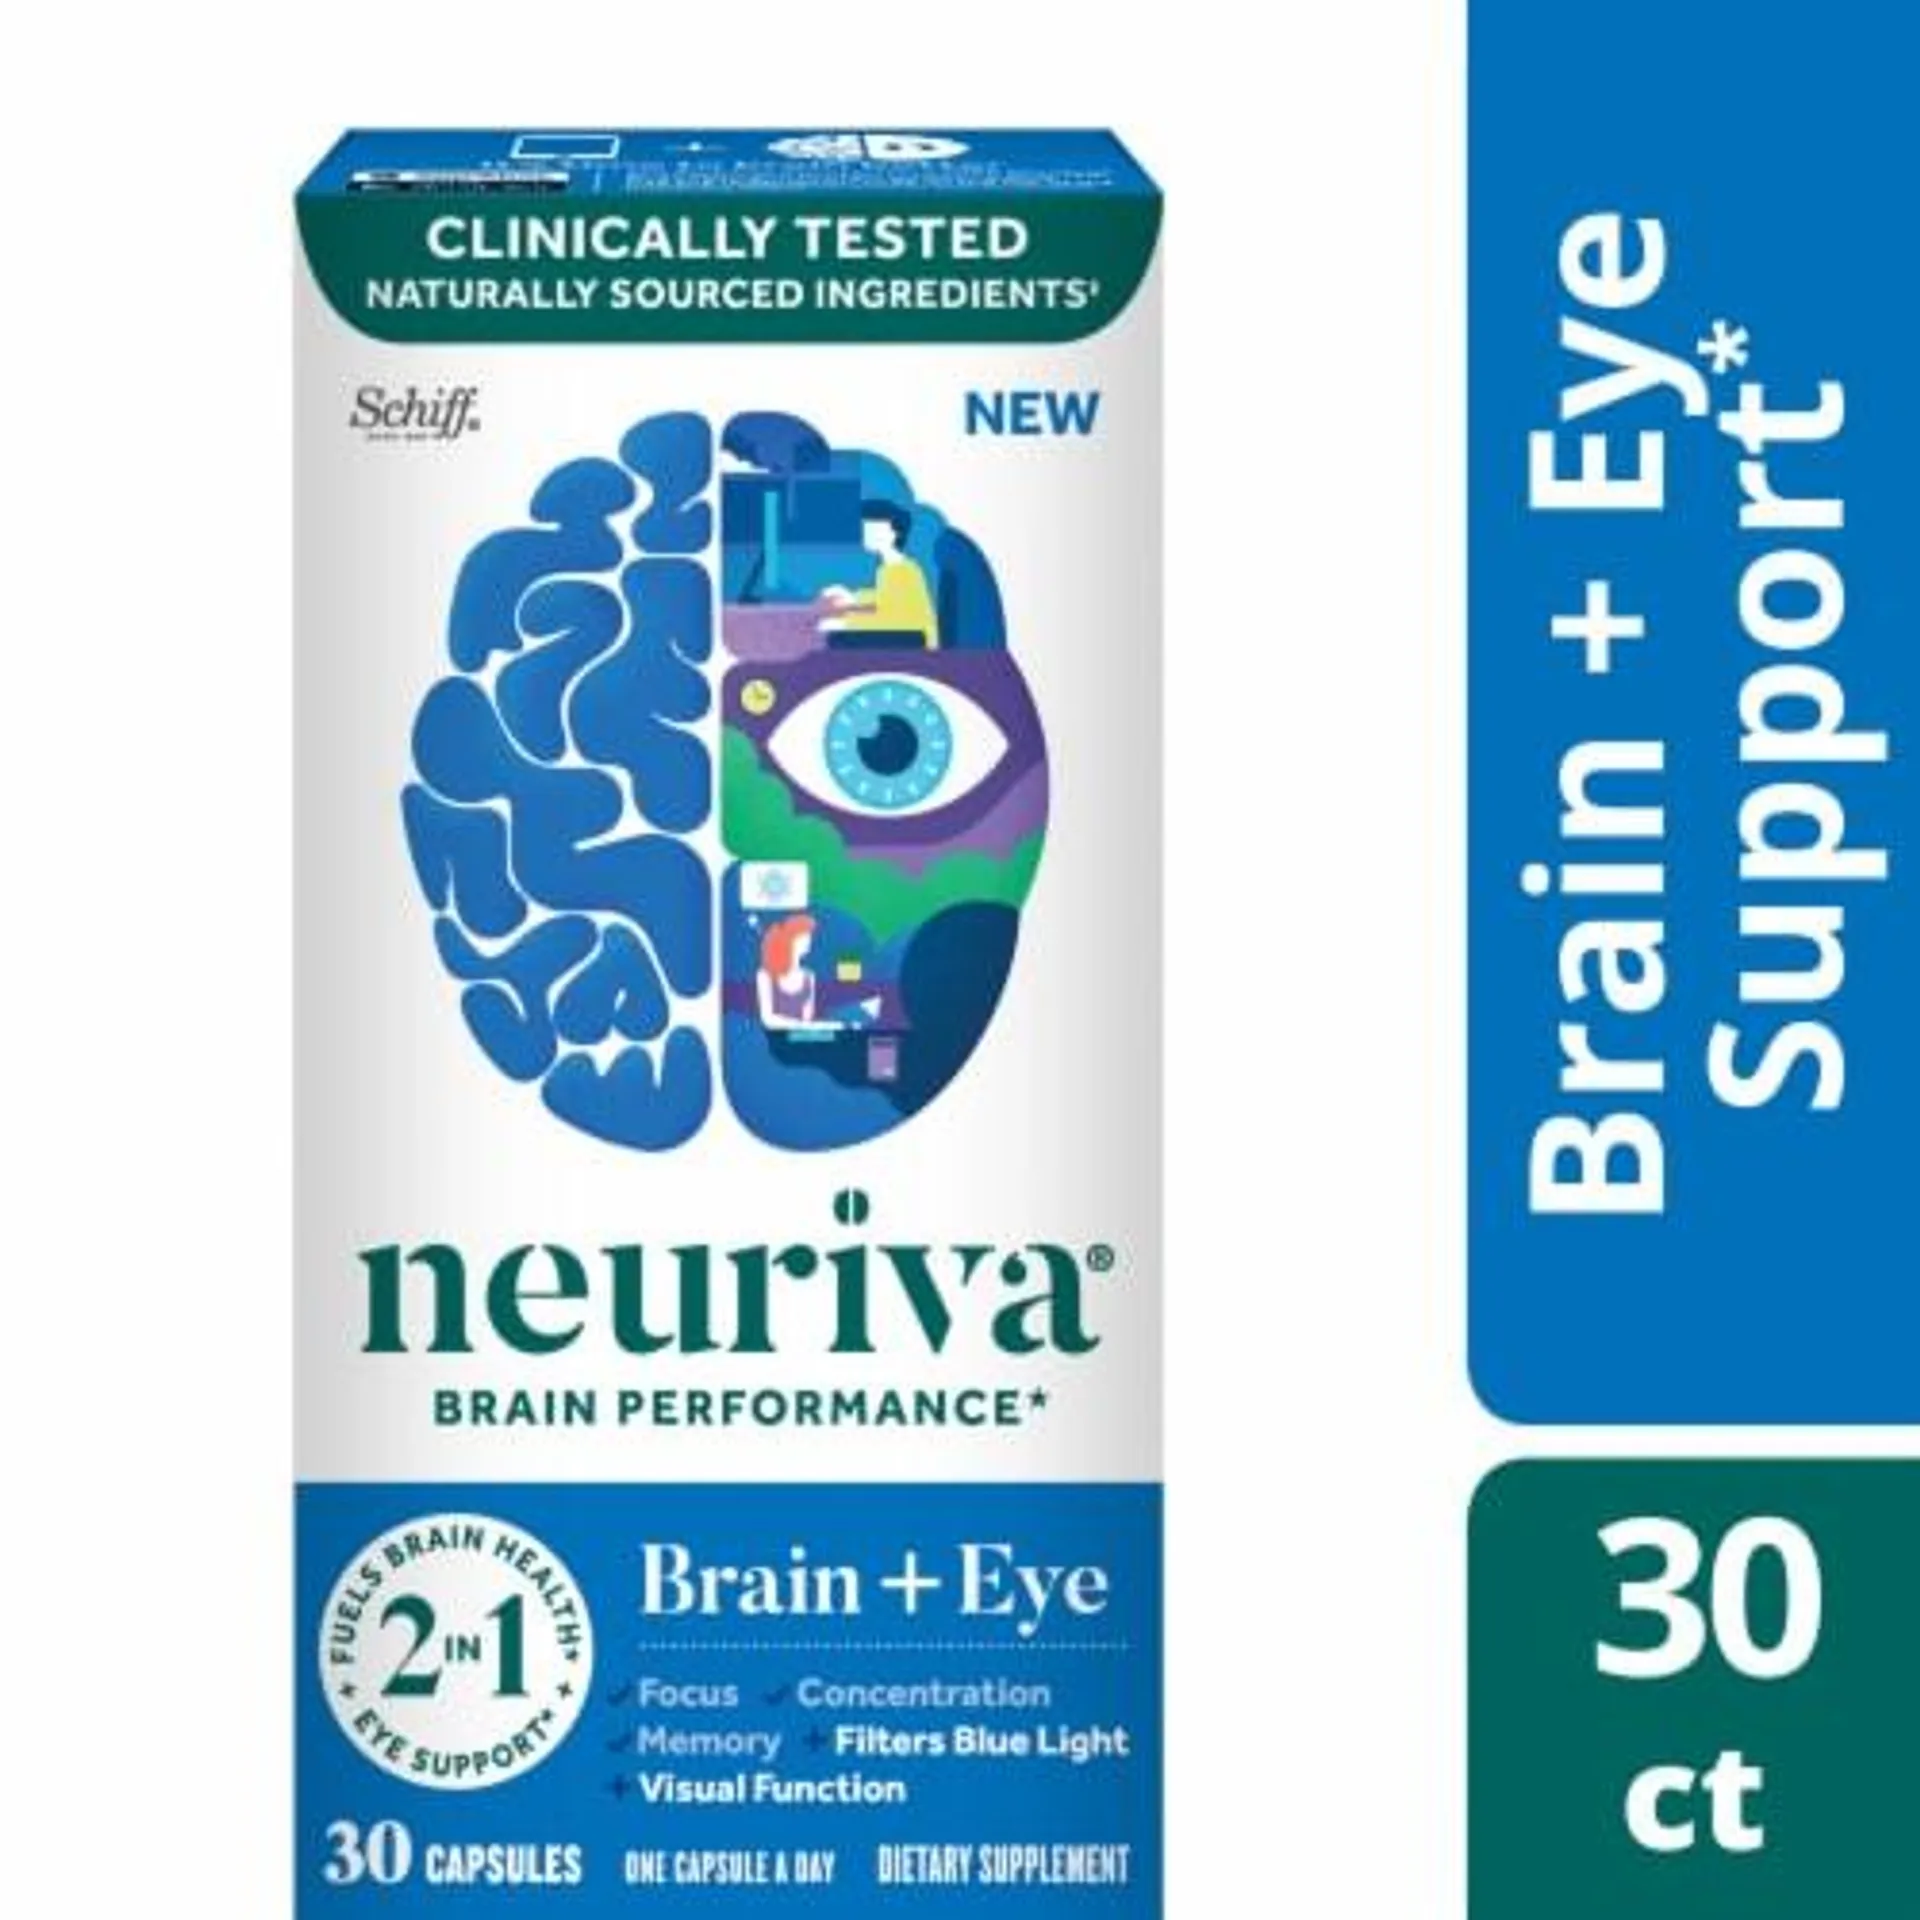 Neuriva® Brain Performance Brain + Eye Capsules